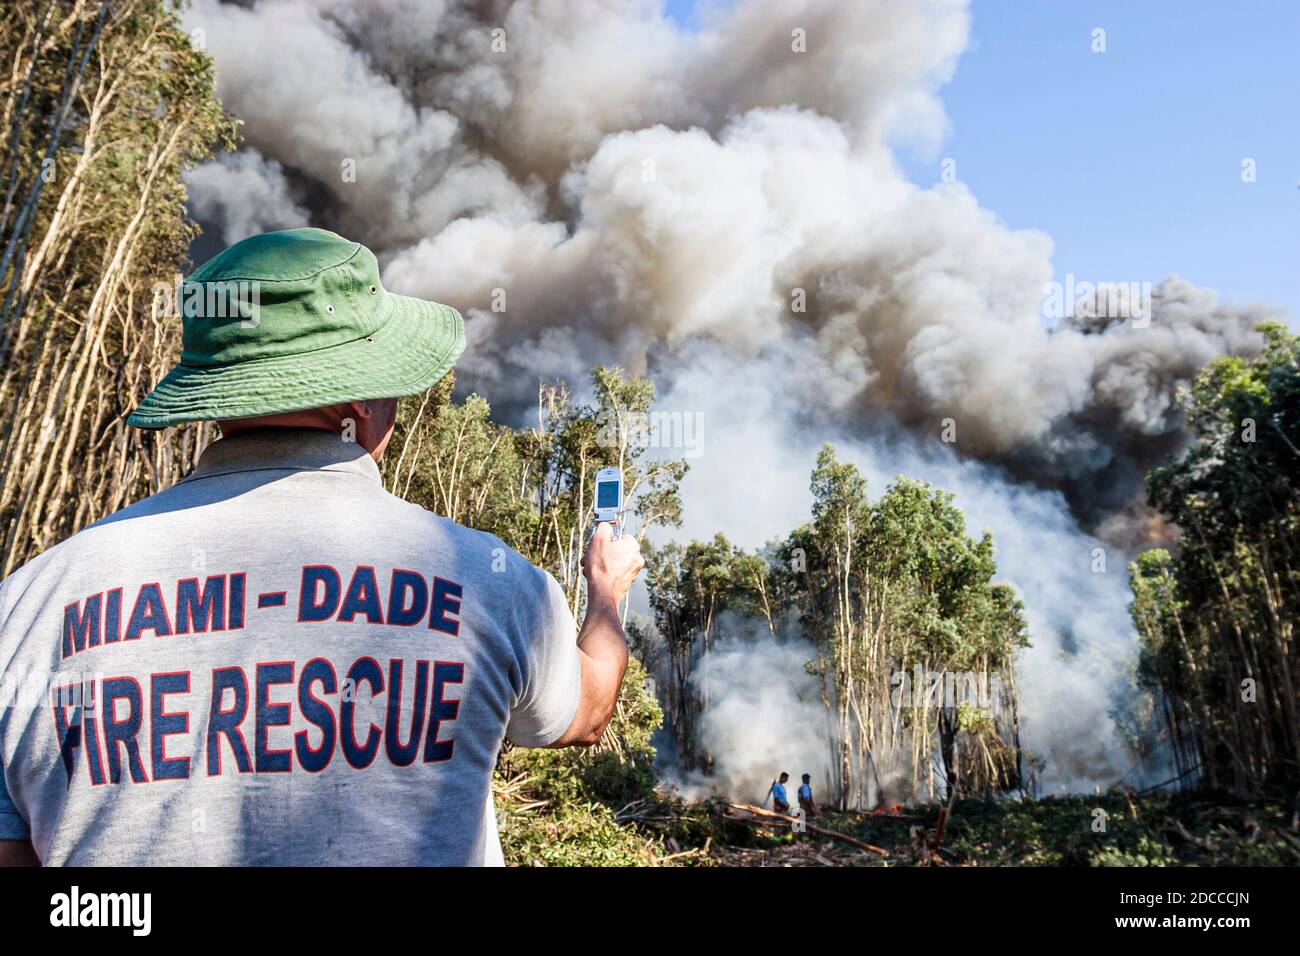 Florida,Miami-Dade Fire Rescue,Everglades,pompier utilisant la caméra mobile cellulaire de téléphone de prendre des photos, feu fumée brûlante arbres combustion contrôlée pompier Banque D'Images